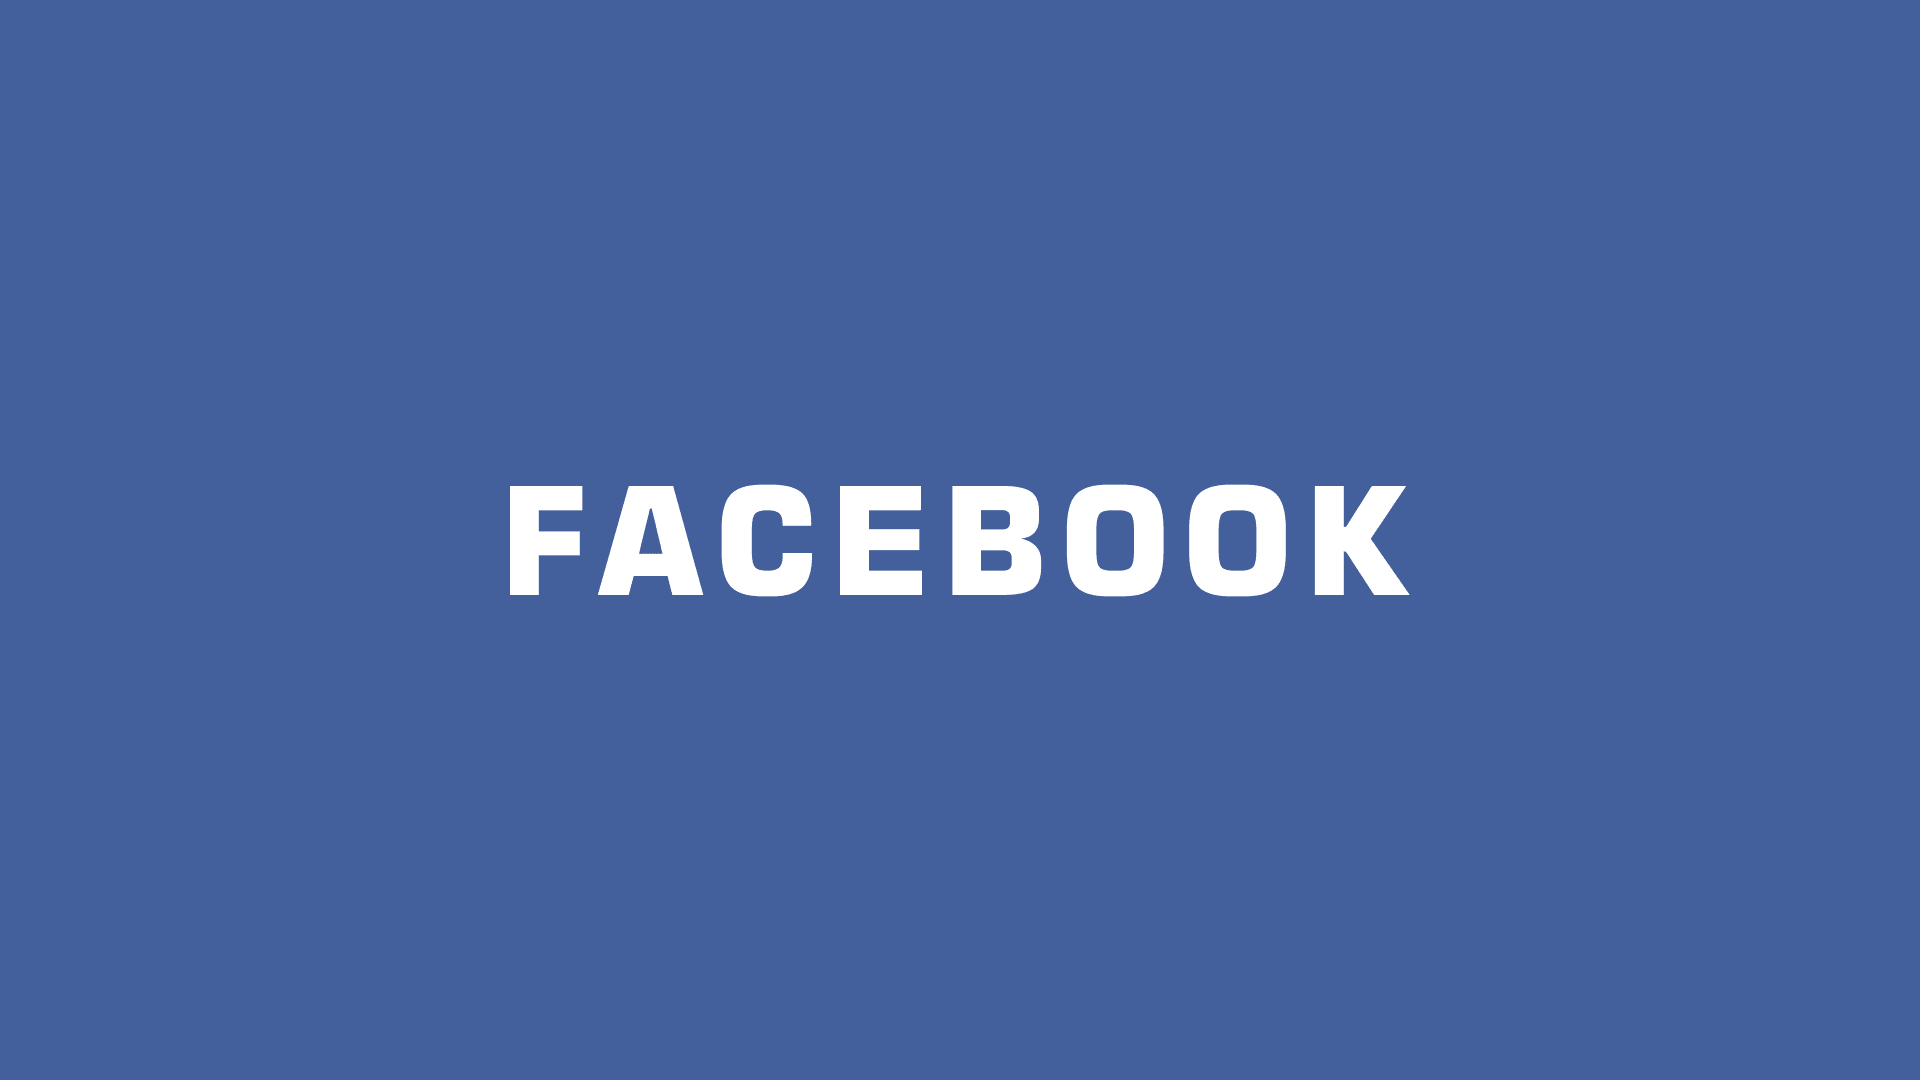 臉書 Facebook 社群程式碼語法教學與學習筆記